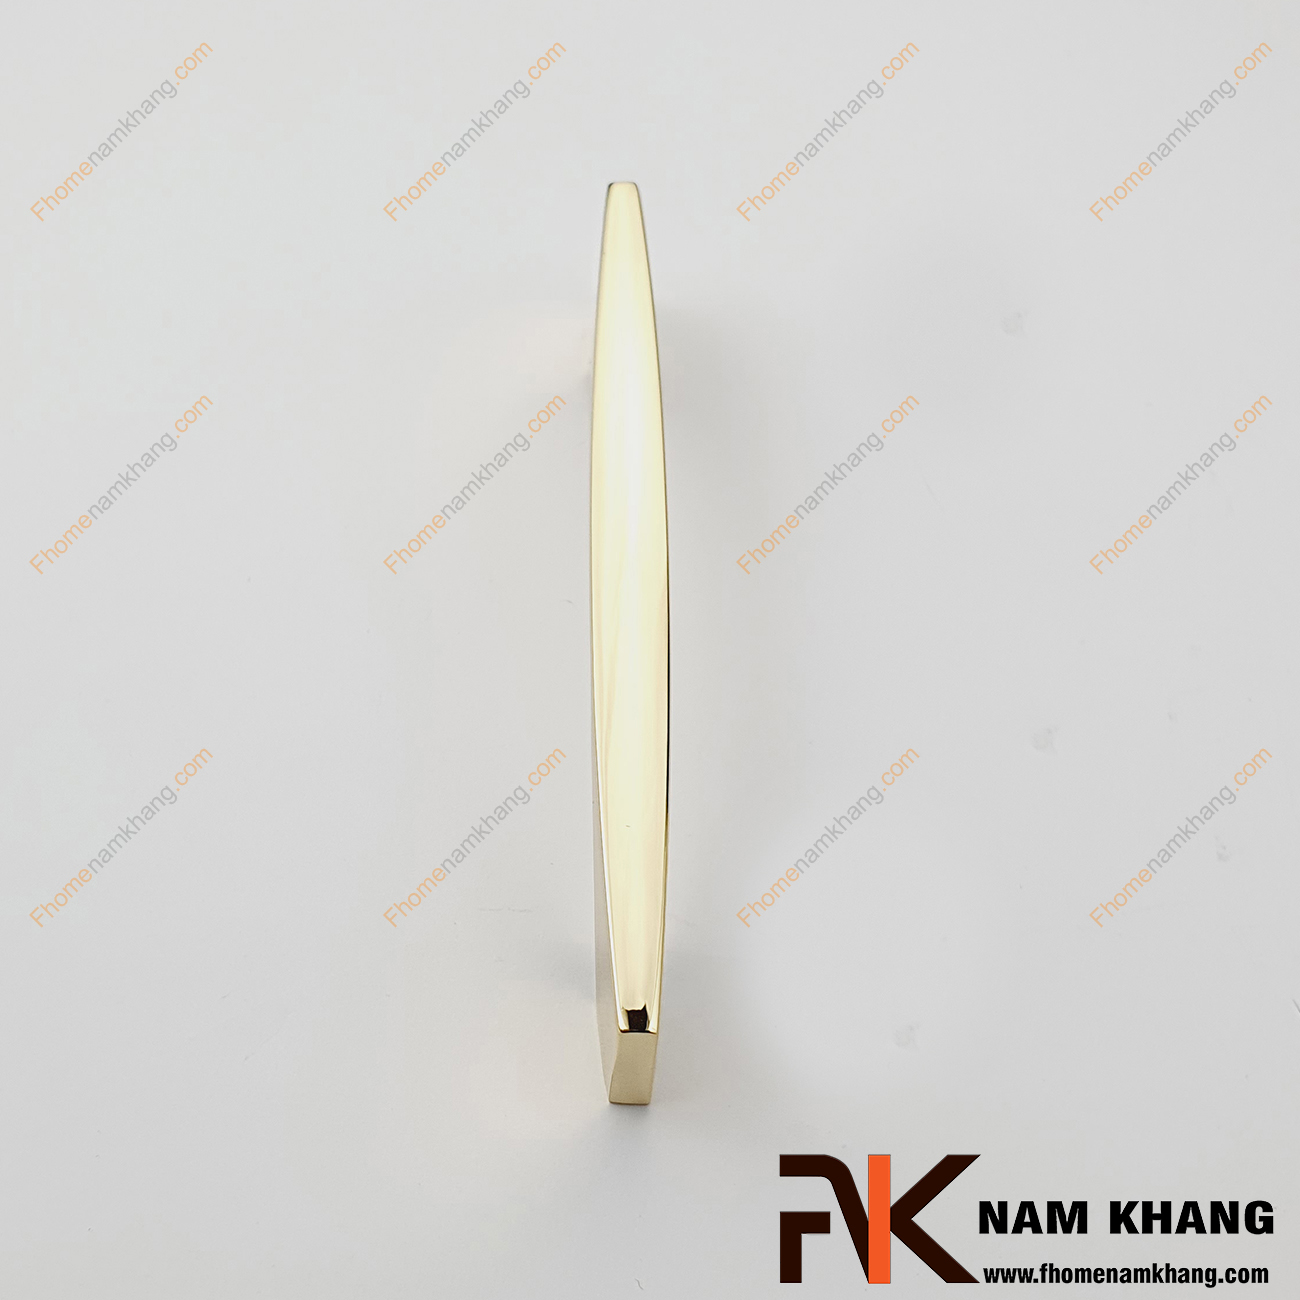 Thiết kế sản phẩm Tay nắm tủ màu vàng bóng NK290L-V có thiết kế đơn giản với phần thân đặc dạng tròn và phần đế dẹp ở hai đầu của tay nắm